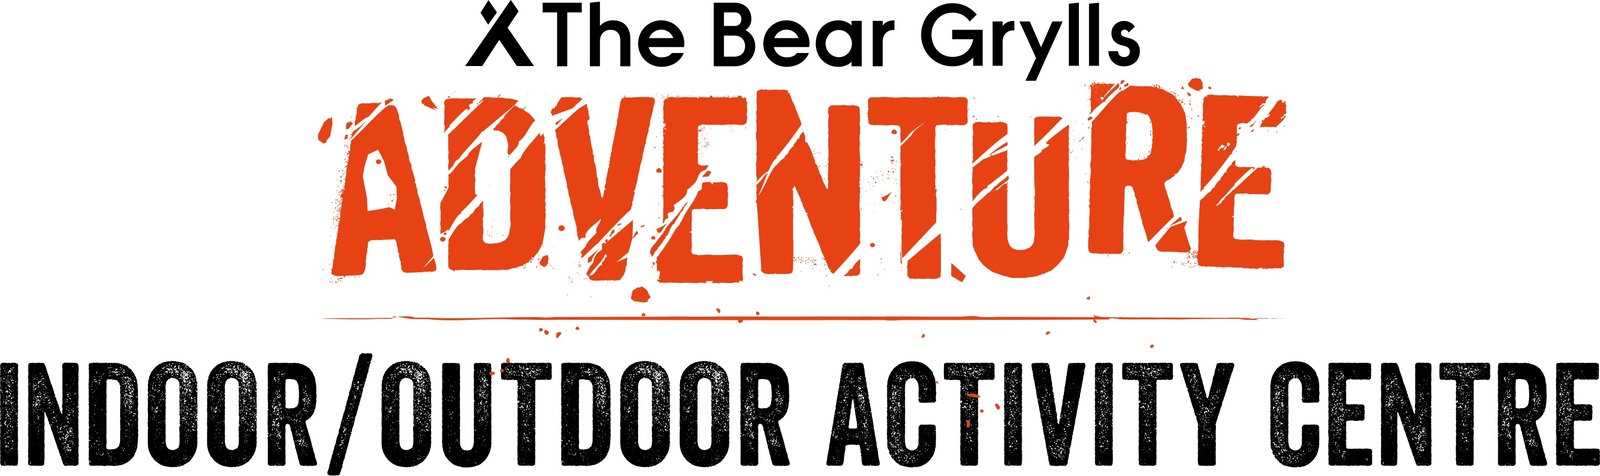 Bear Grylls logo